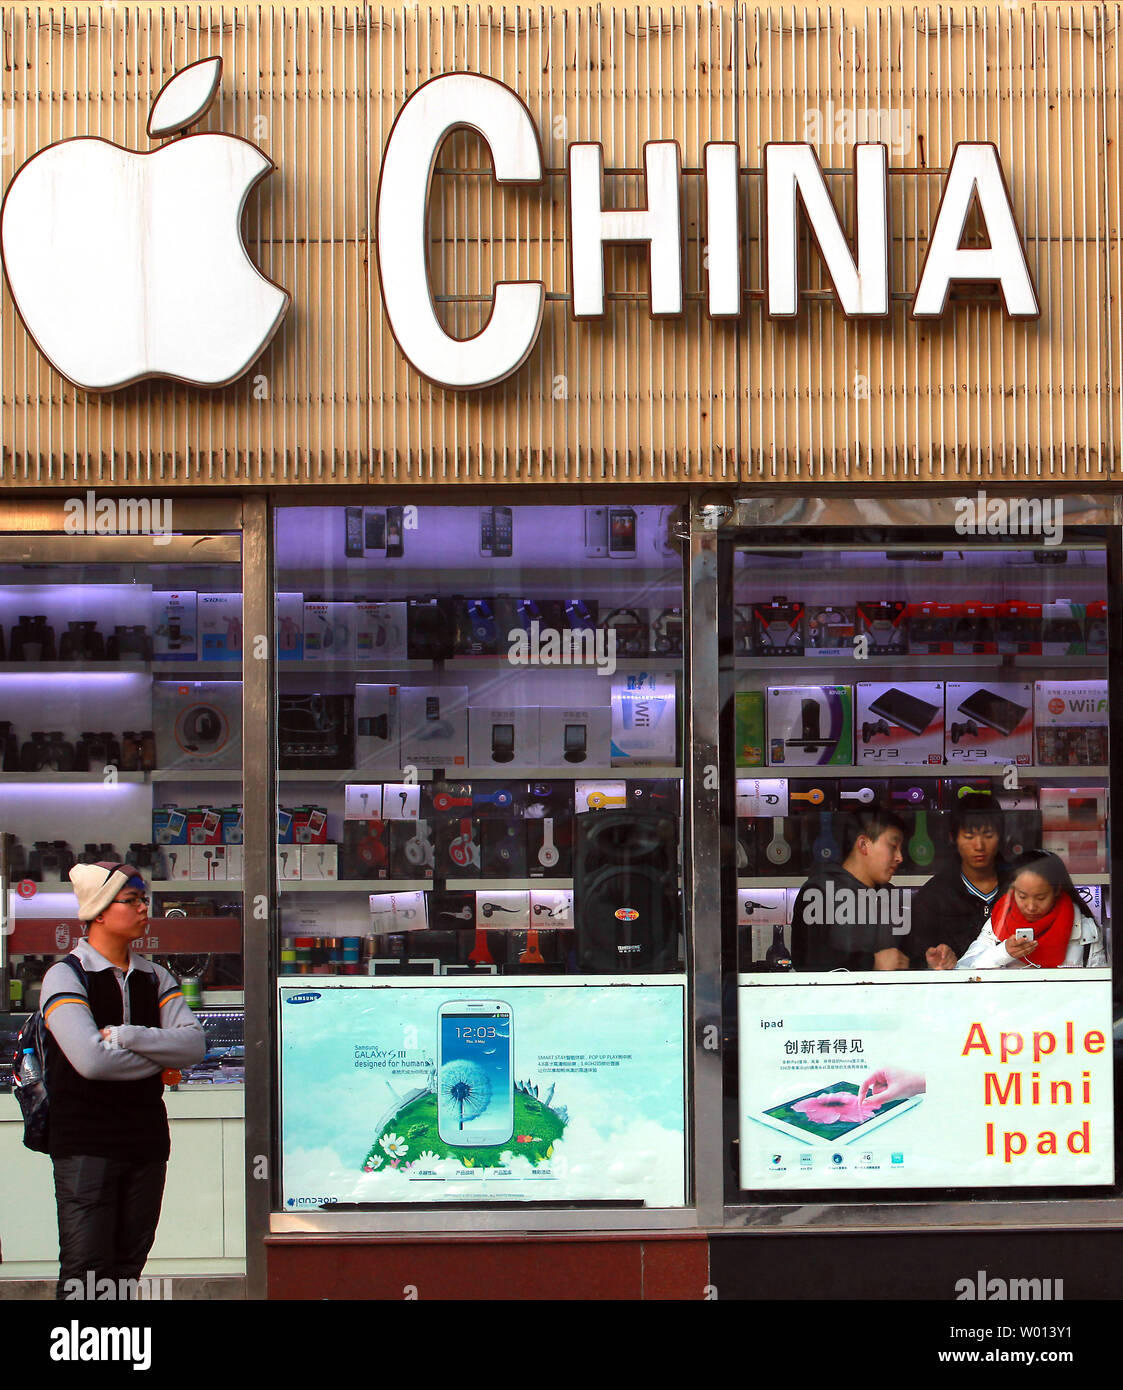 Ein elektronik Store verkauft Apple iPhones, iPads und Computer zusammen mit China Mobile Abos in Peking am 13. Dezember 2013. China Mobile, der weltweit größten mobilen Unternehmen von Teilnehmern, ist jetzt öffnet seine Türen für Apple mit 4G-Lizenzen in den Hoffnungen der Aufnahme Chinas iPhone Markt. UPI/Stephen Rasierer Stockfoto